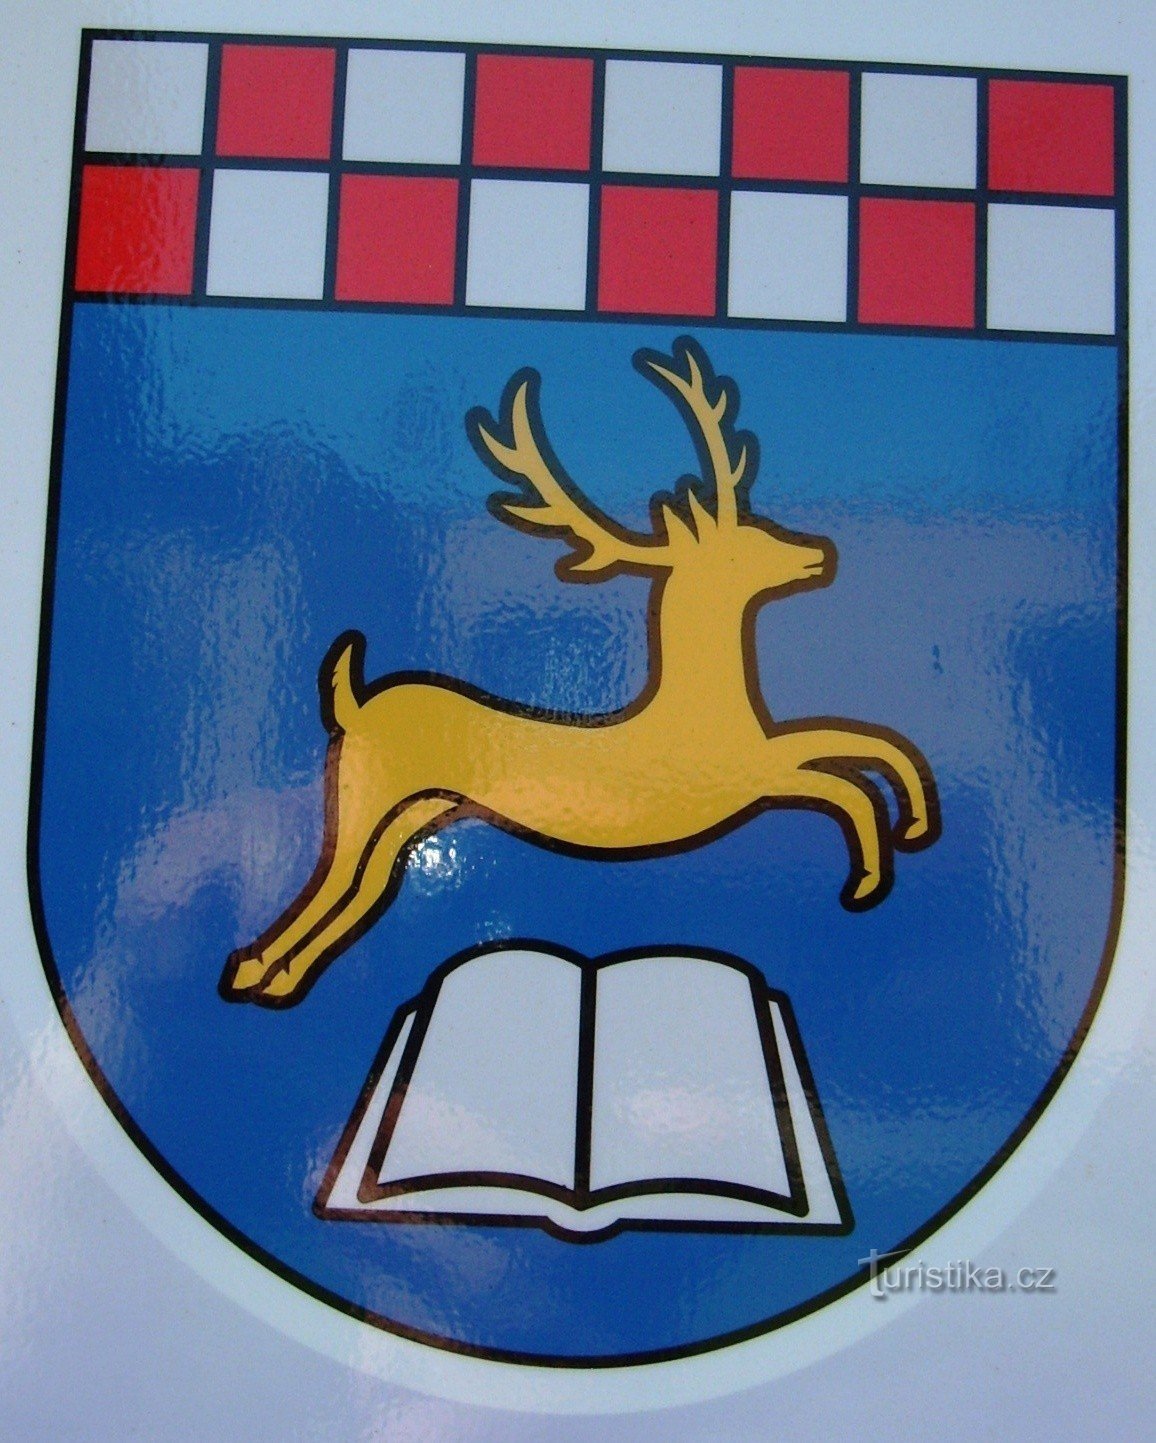 герб села